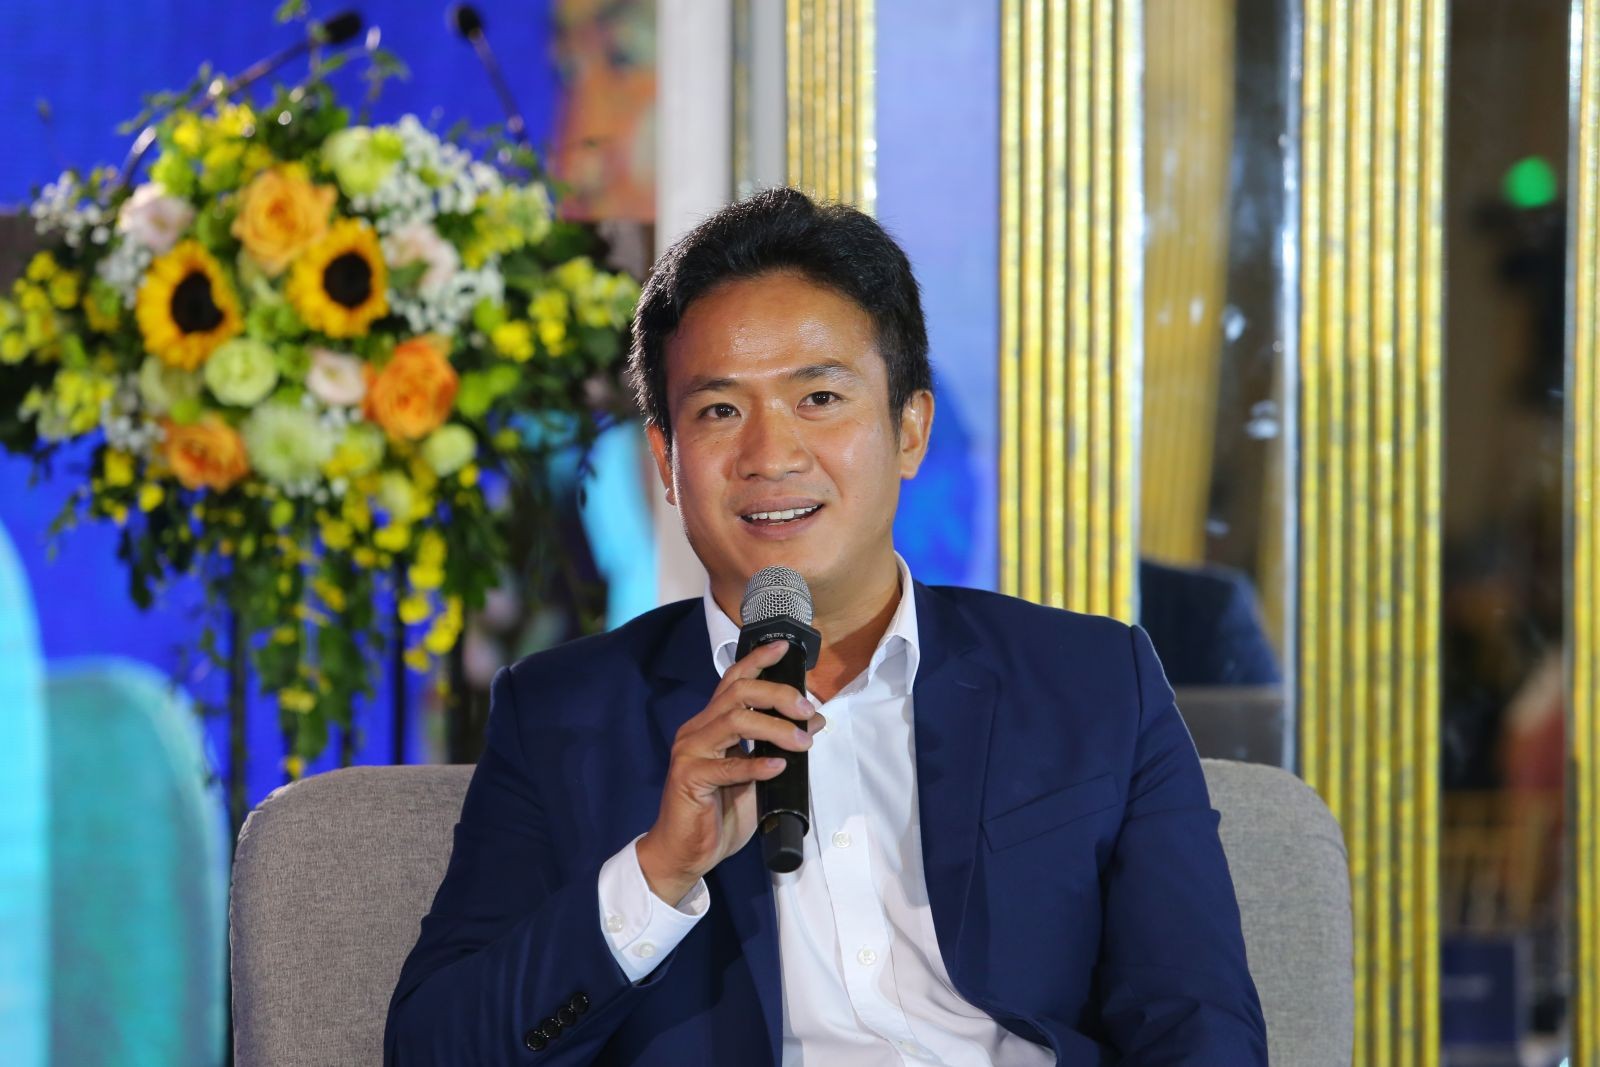 
Ông Nguyễn Công Chính, Giám đốc Công nghệ - Trưởng Ban Chuyển đổi số Công ty cổ phần Dịch vụ &amp; Địa ốc Đất Xanh Miền Bắc
